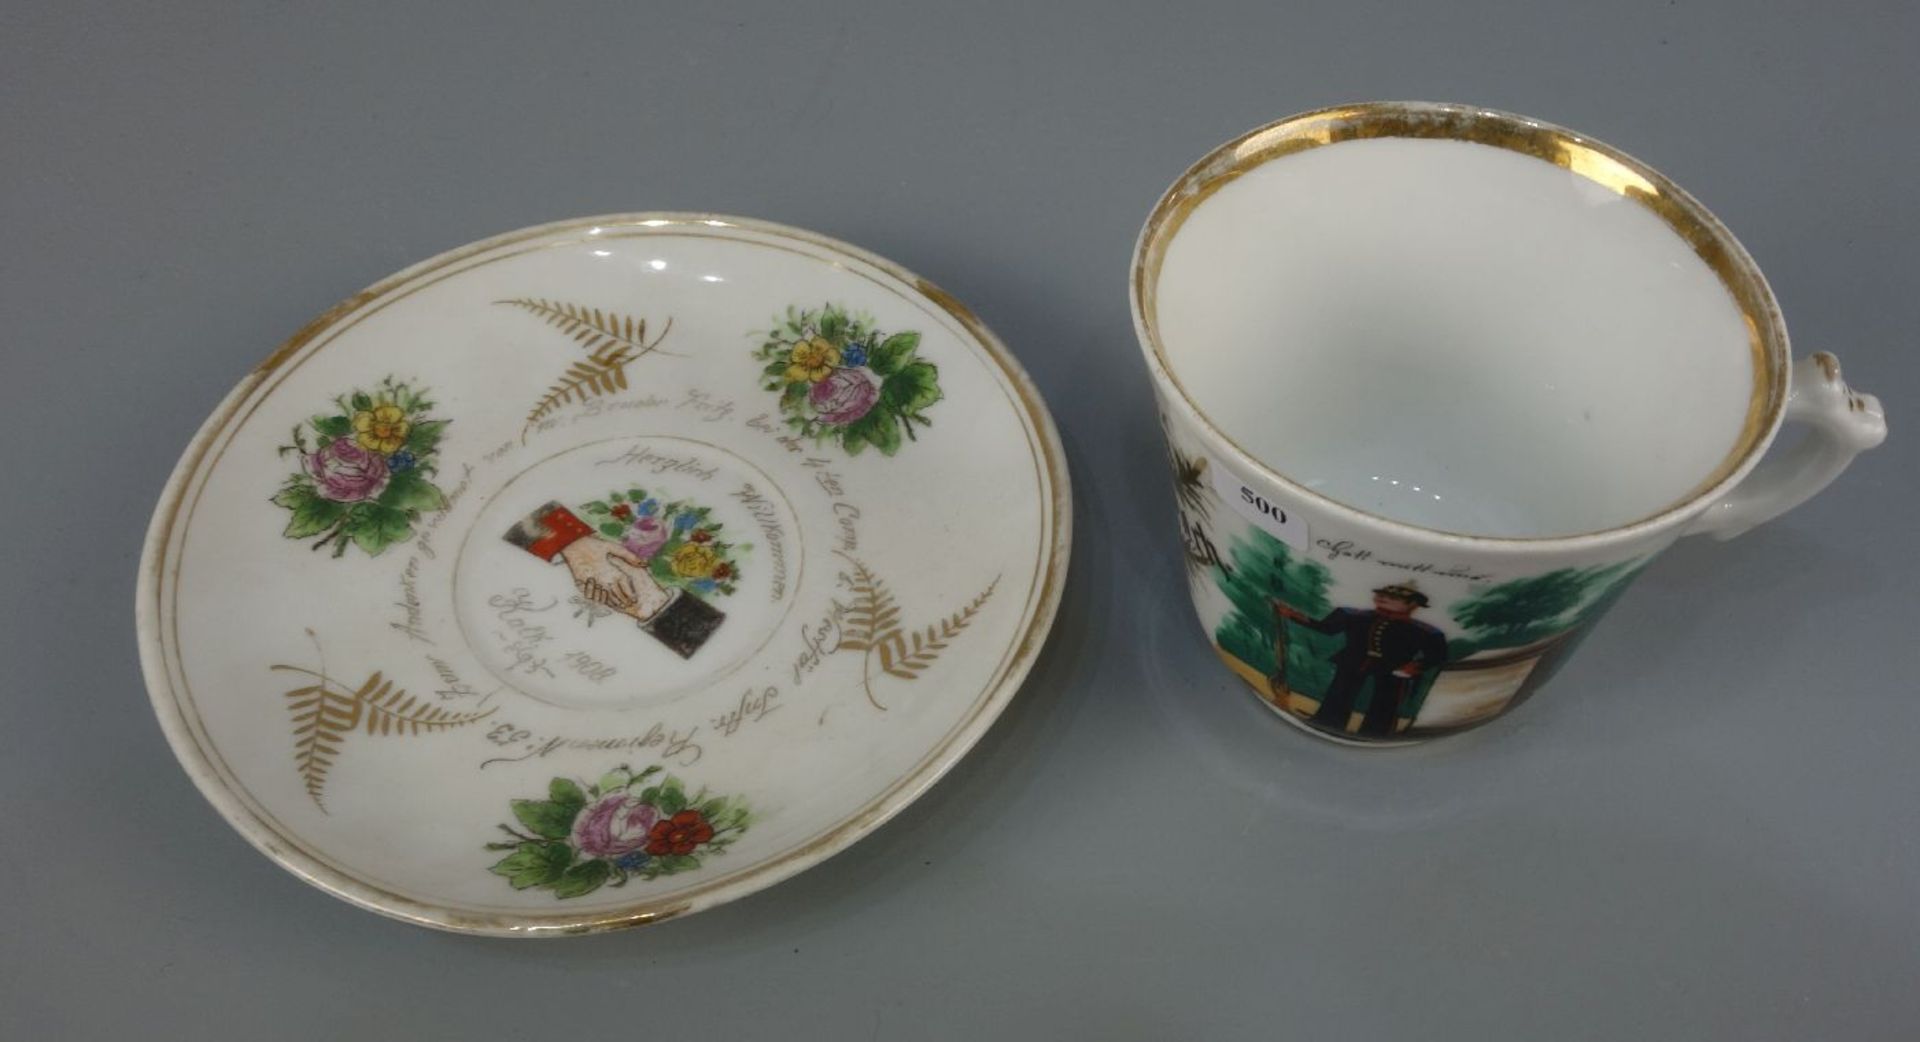 MILITARIA-TASSE / ANDENKENTASSE / military cup, um 1900, Porzellan, ungemarkt. Goldrand, schwarzes - Bild 2 aus 4